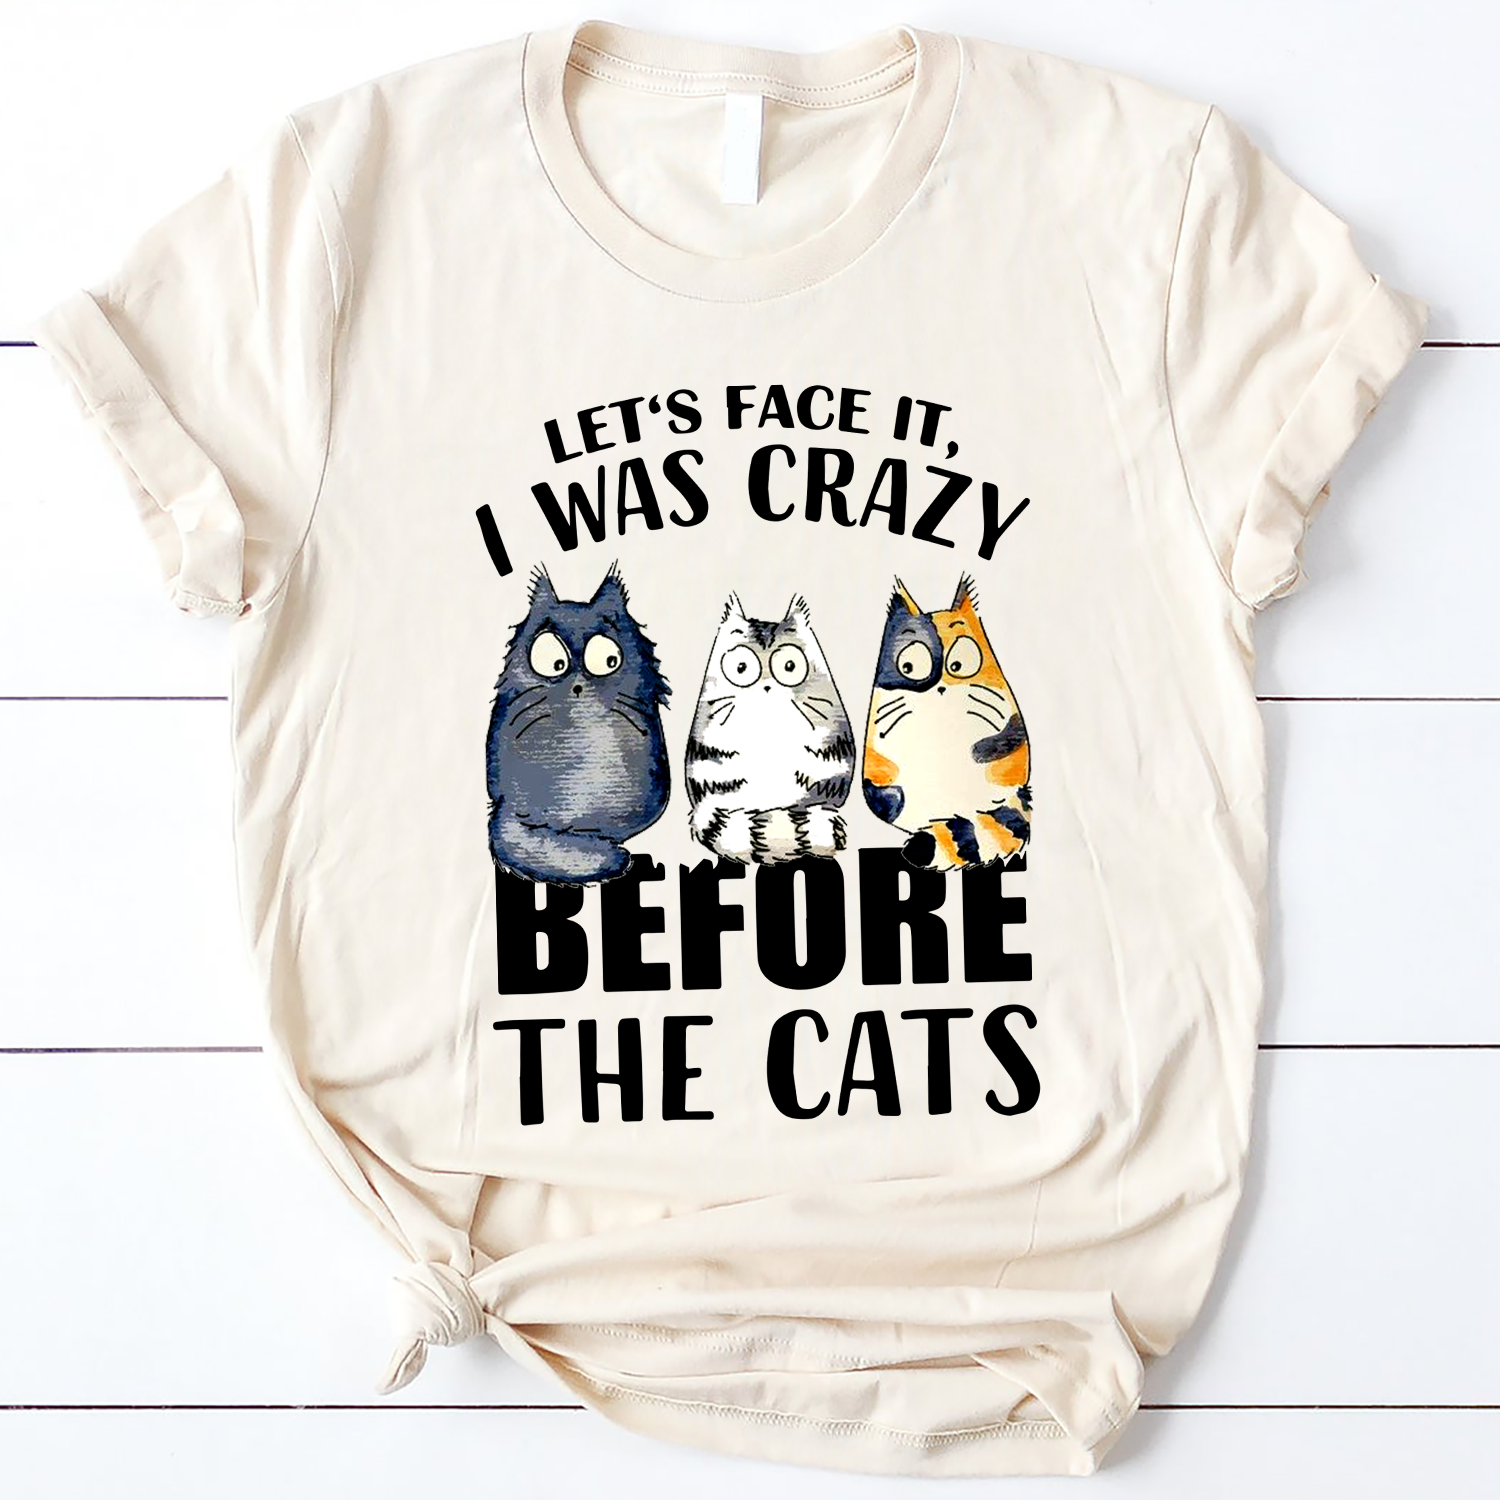 The Cats Standard T-Shirt